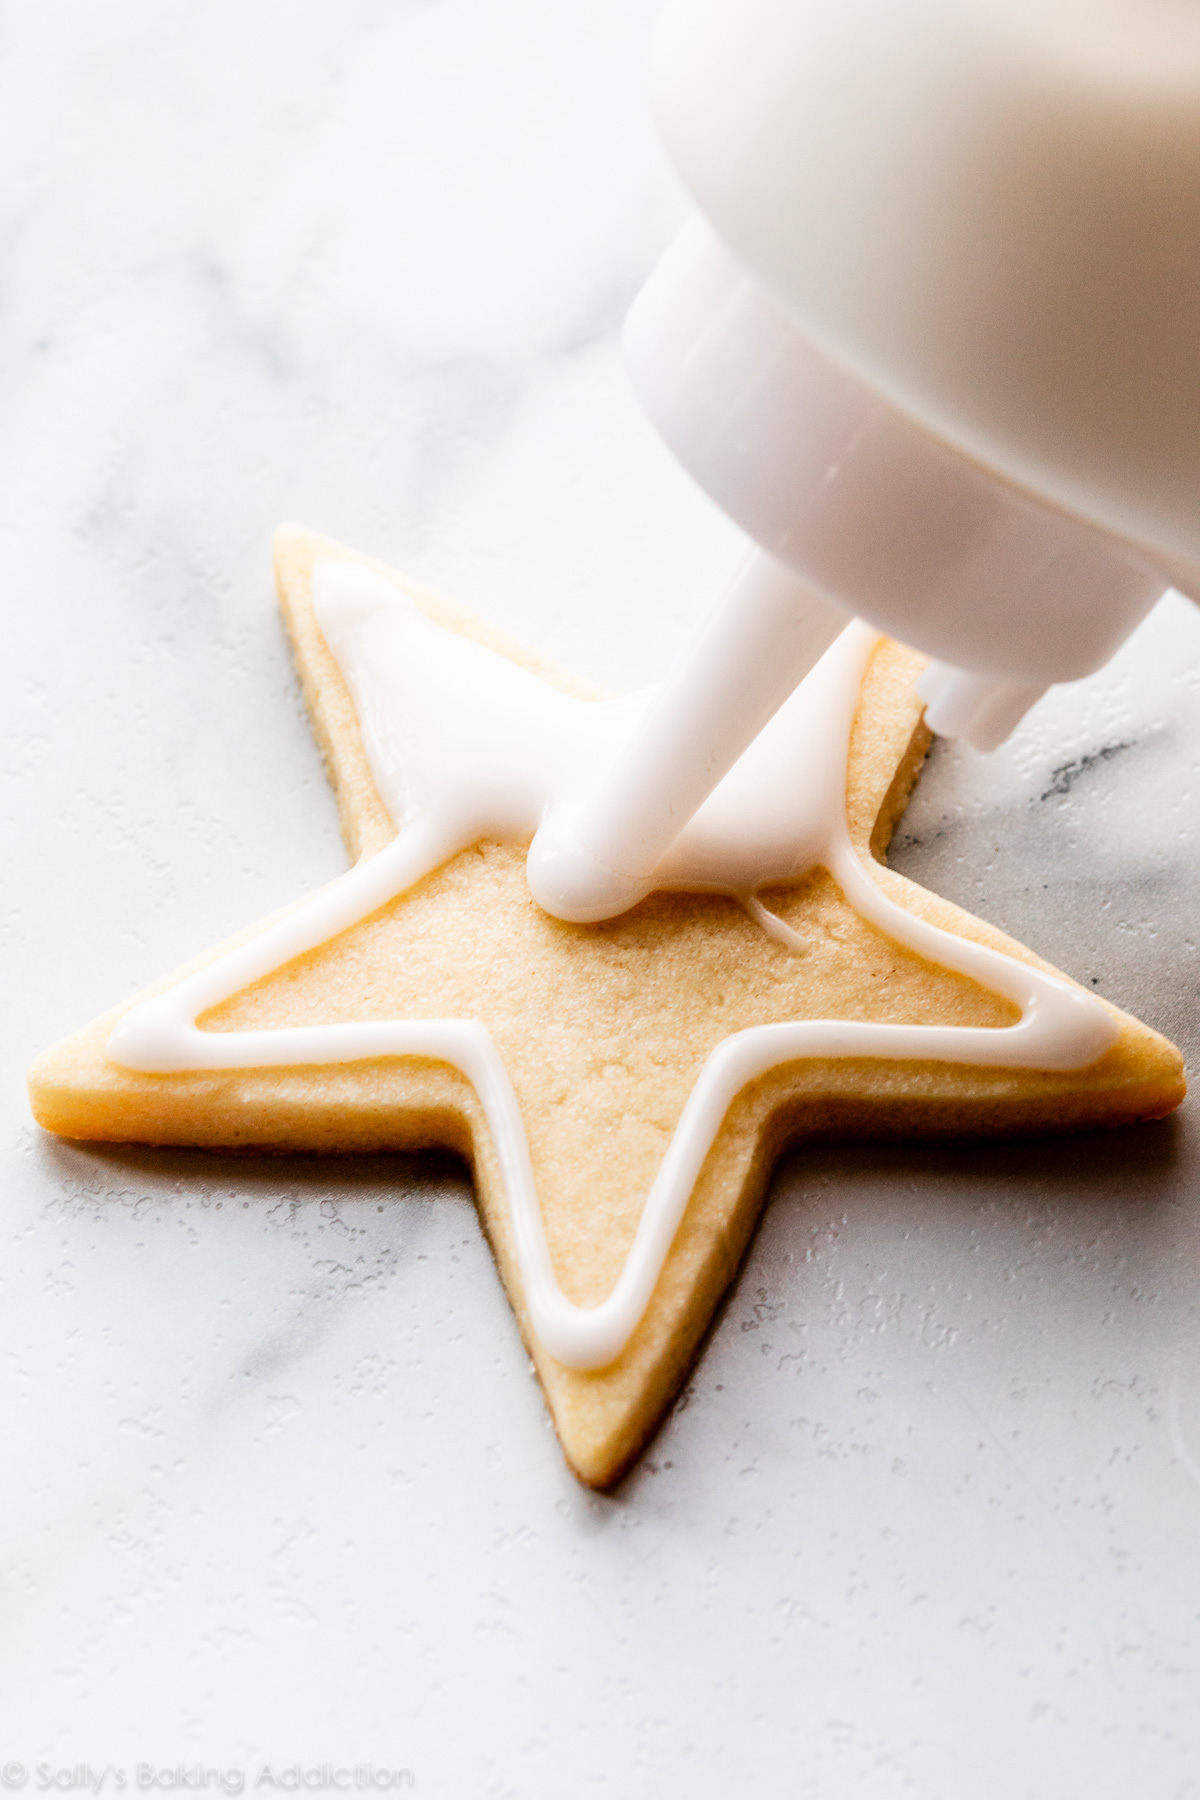 décorer un biscuit au sucre avec un glaçage blanc à l'aide d'une bouteille souple